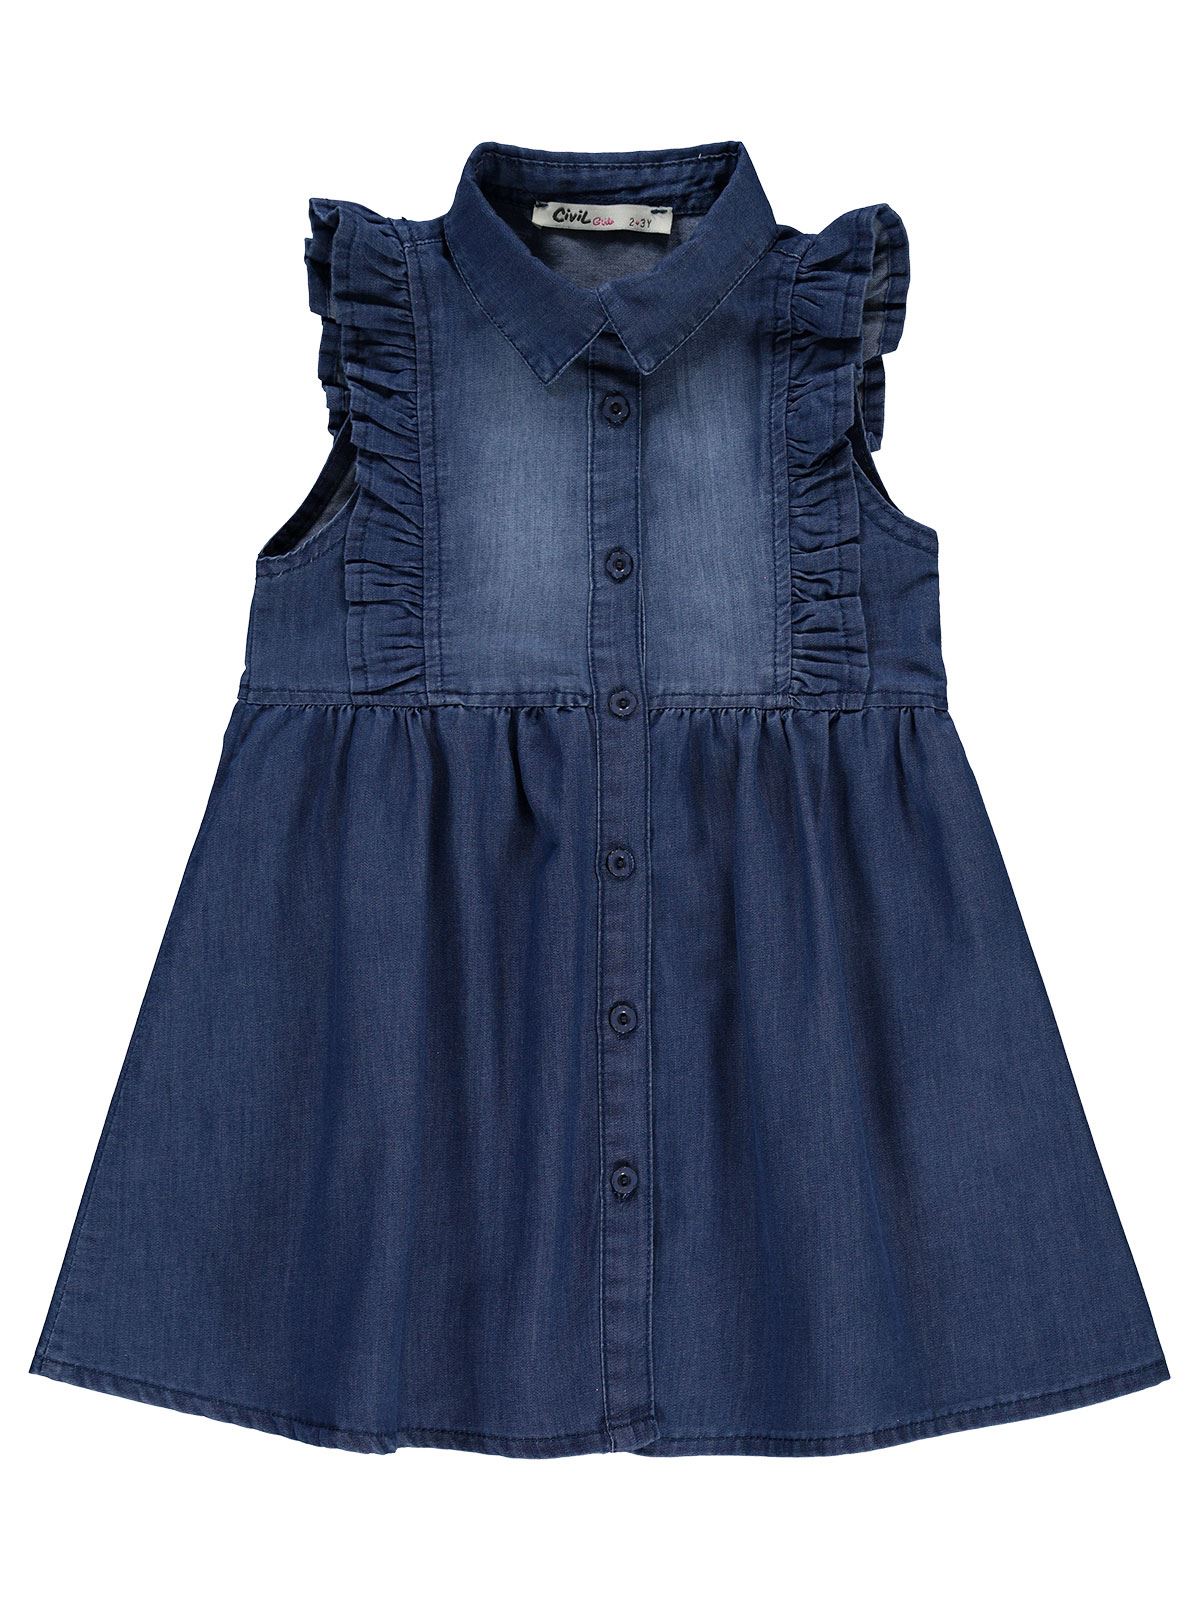 Civil Girls Kız Çocuk Kot Elbise 2-5 Yaş Koyu Mavi